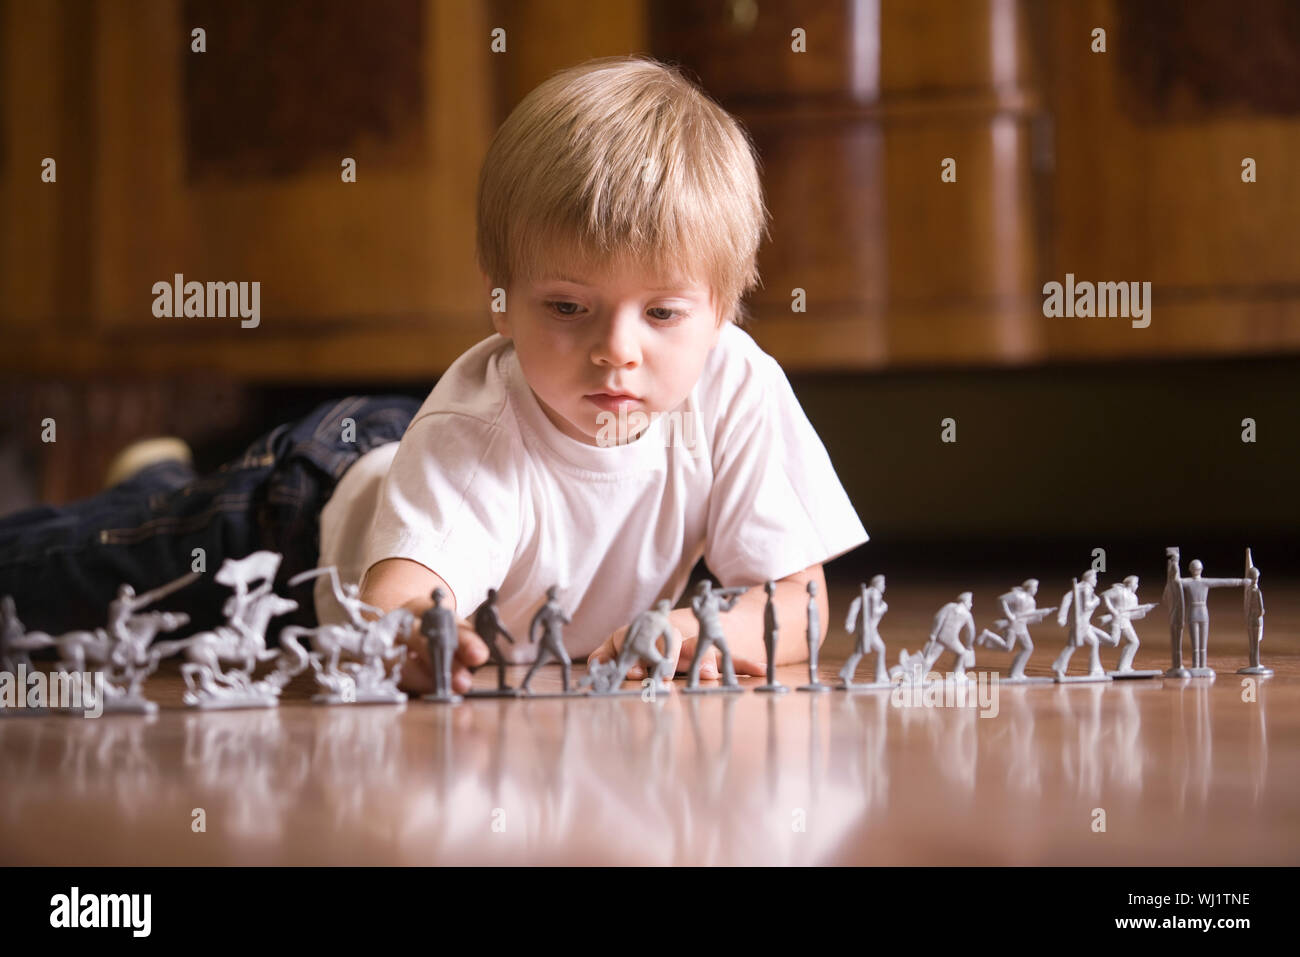 Worsmate мальчик играет с д текст. Мальчик солдатик. Мальчик играющий в солдатики. Дети играют в солдатиков. Игра в солдатики.